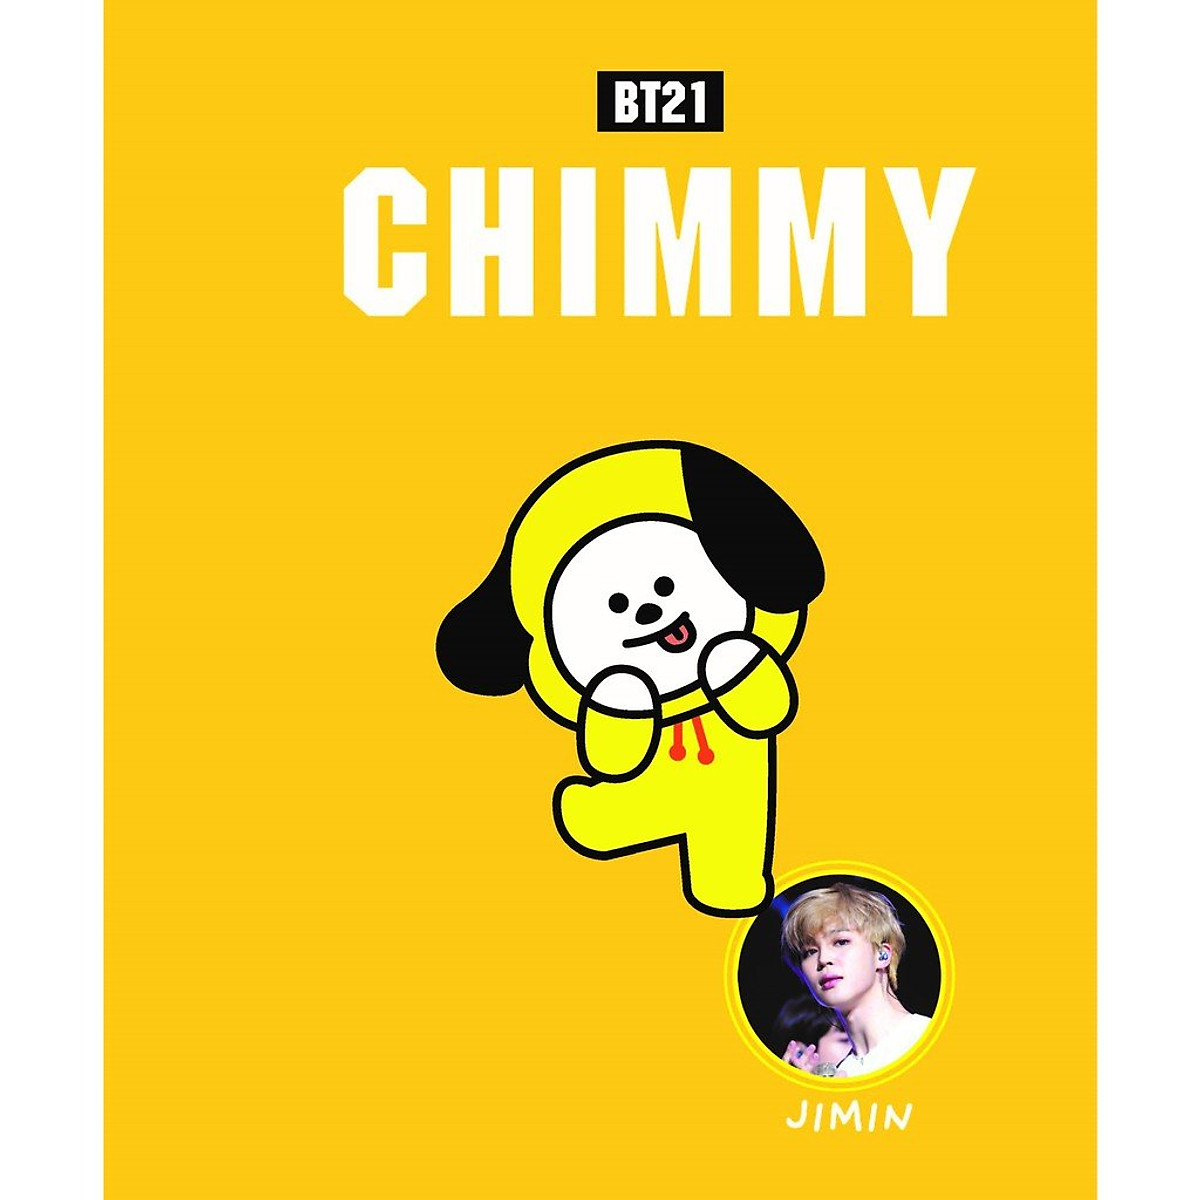 BTS Vẽ hình ảnh RUN Kpop  chimmy png bts bt21 png tải về  Miễn phí trong  suốt Phim Hoạt Hình png Tải về